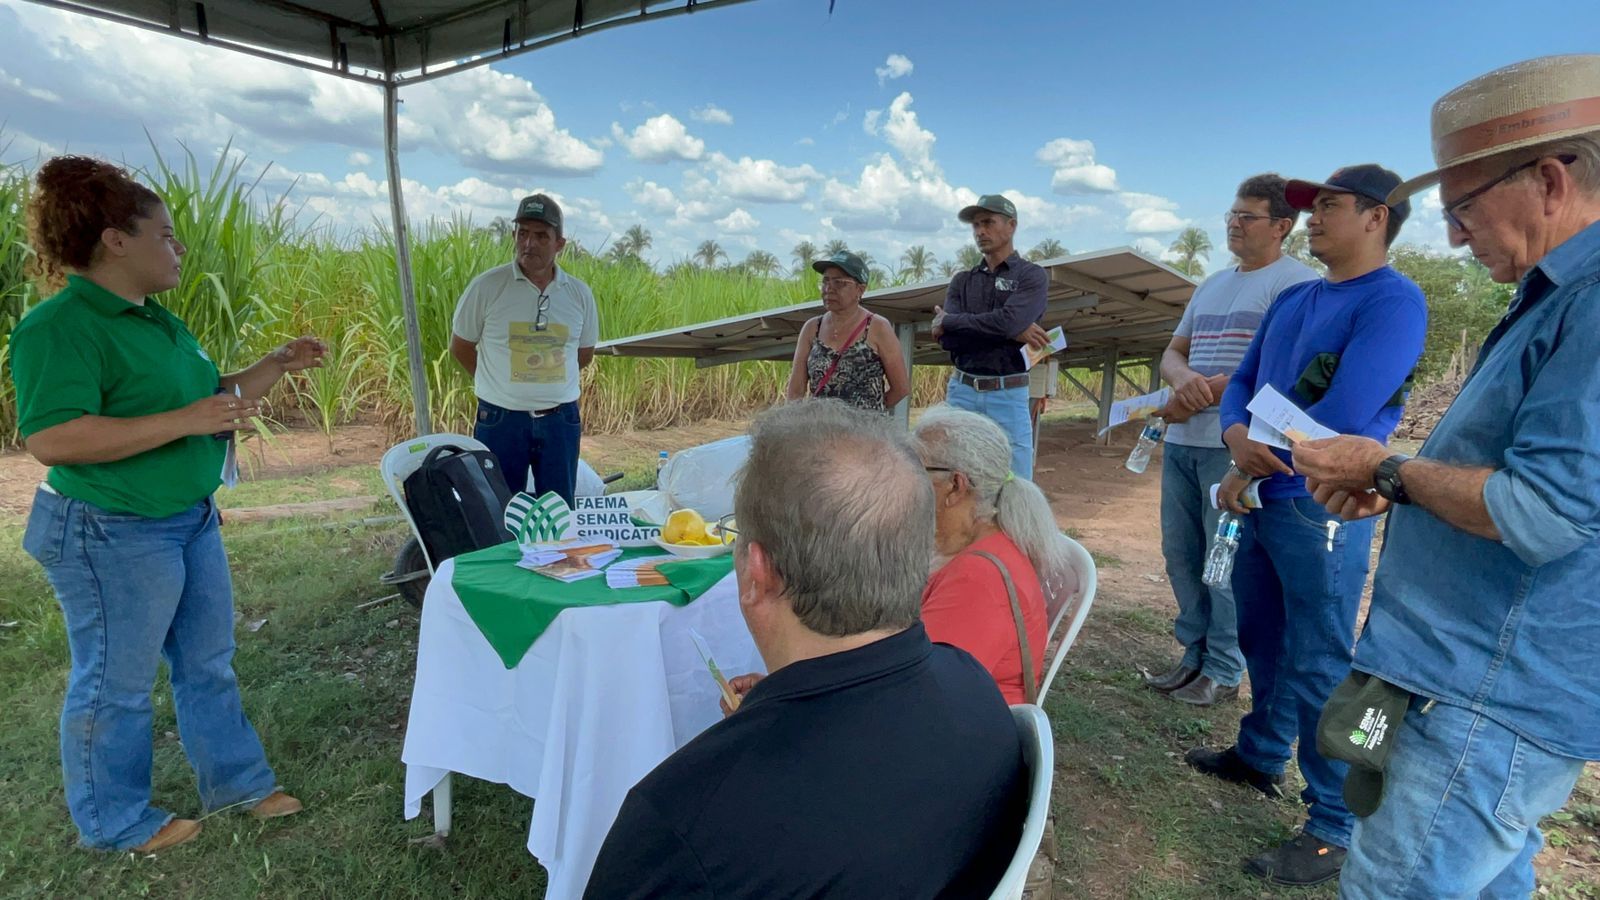  O produtor rural Édson Fontes, além de anfitrião do dia de campo, compartilhou sua experiência e resultados com os demais produtores da região